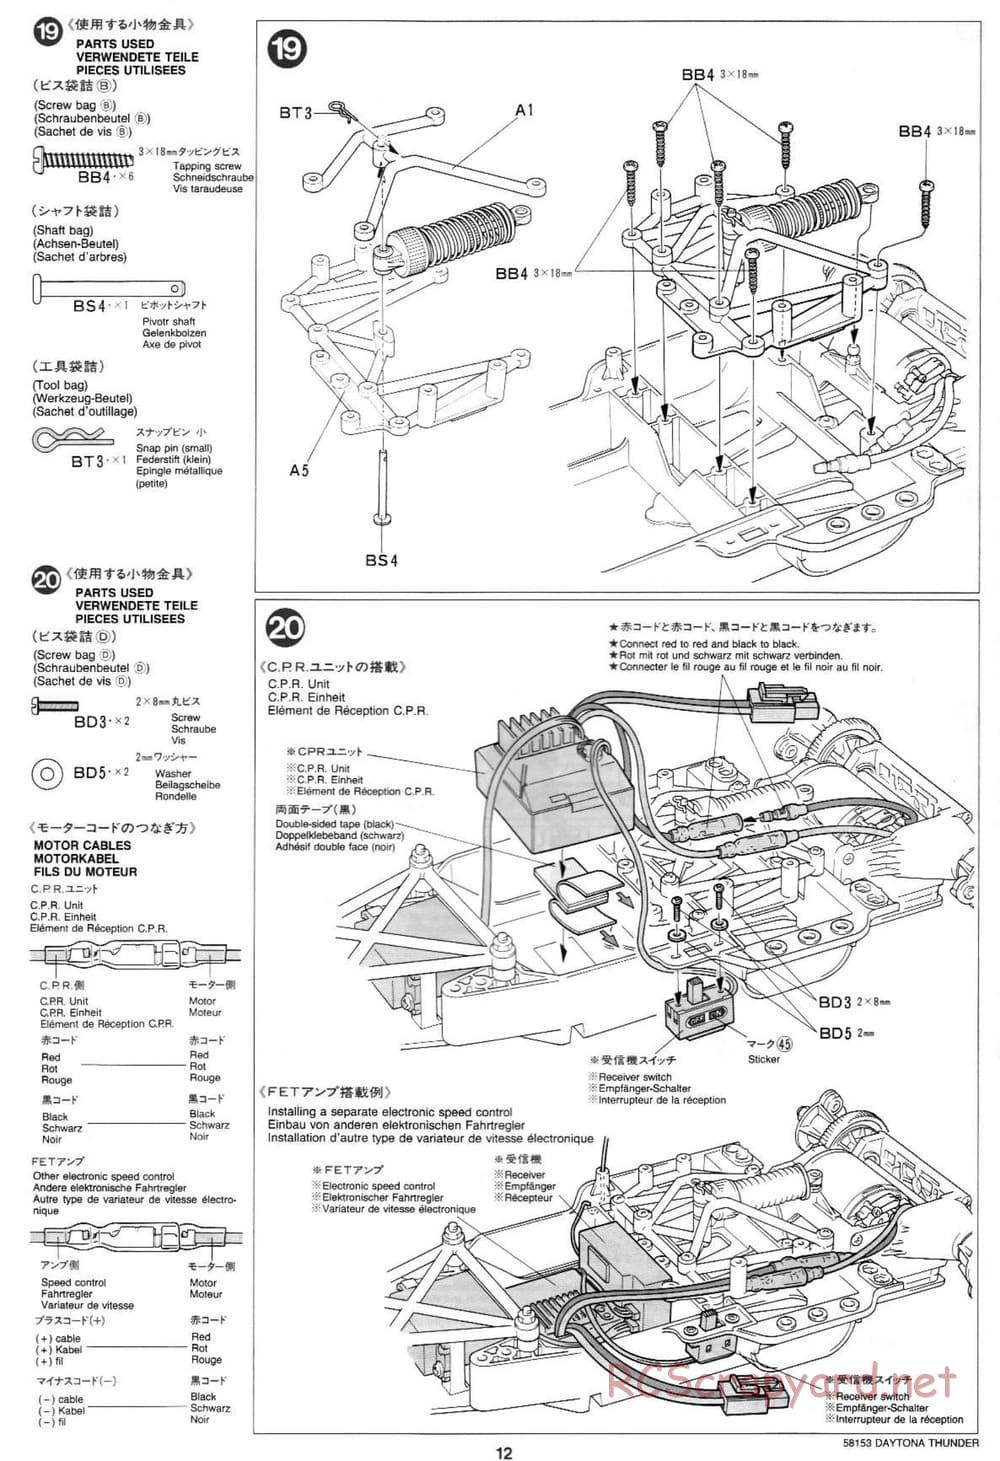 Tamiya - Daytona Thunder - Group-C Chassis - Manual - Page 12